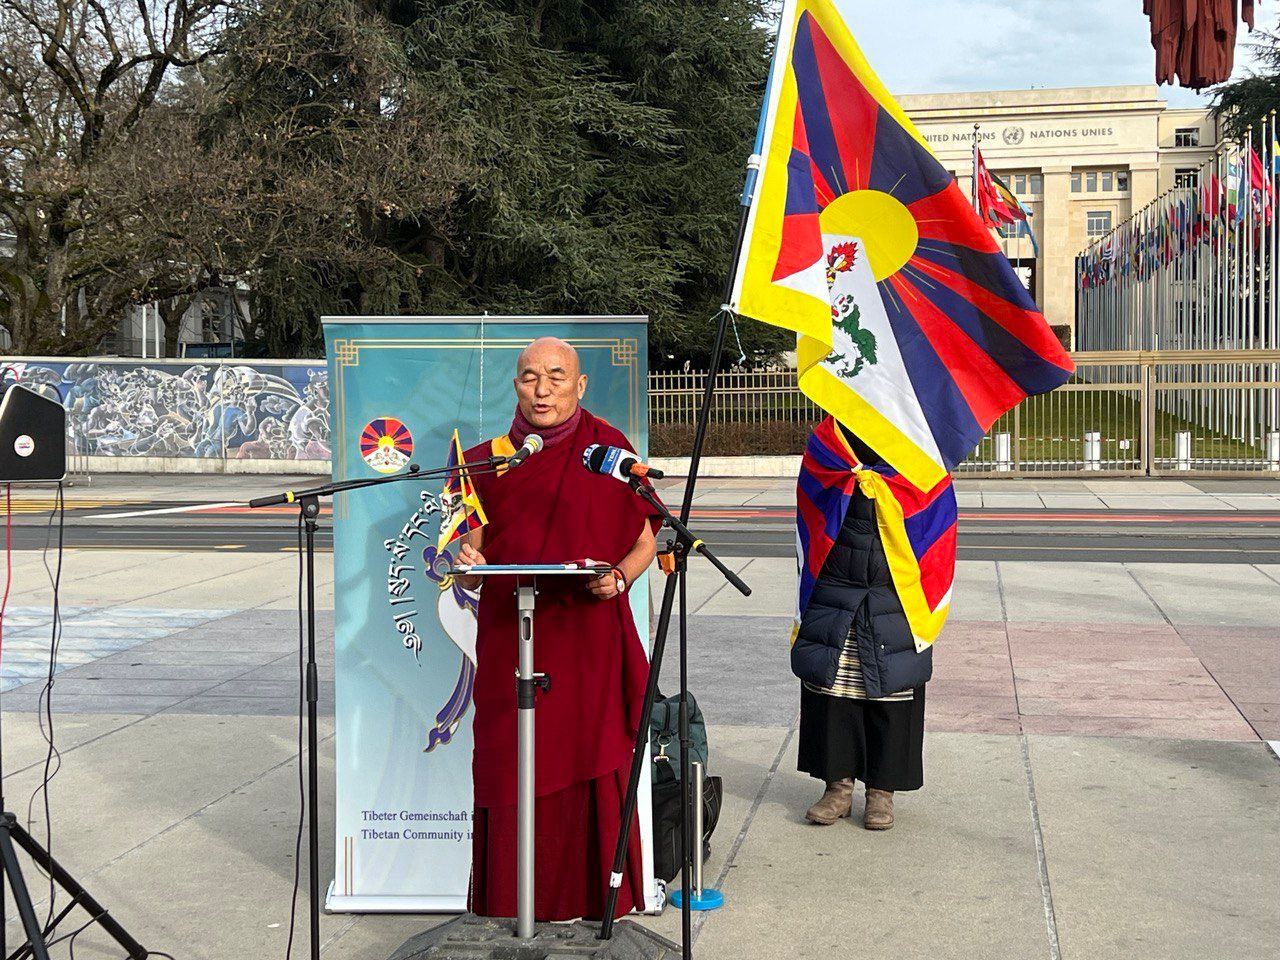 El miembro de Europa del Parlamento tibetano en el exilio, Ven Thubten Wangchen, pidió a los países democráticos que boicoteen los Juegos Olímpicos de Beijing mientras se dirigía a la manifestación en Ginebra el 04 de enero de 2022. 2 comunidades tibetanas en Suiza y Alemania llaman al boicot diplomático de los Juegos Olímpicos de Beijing 2022